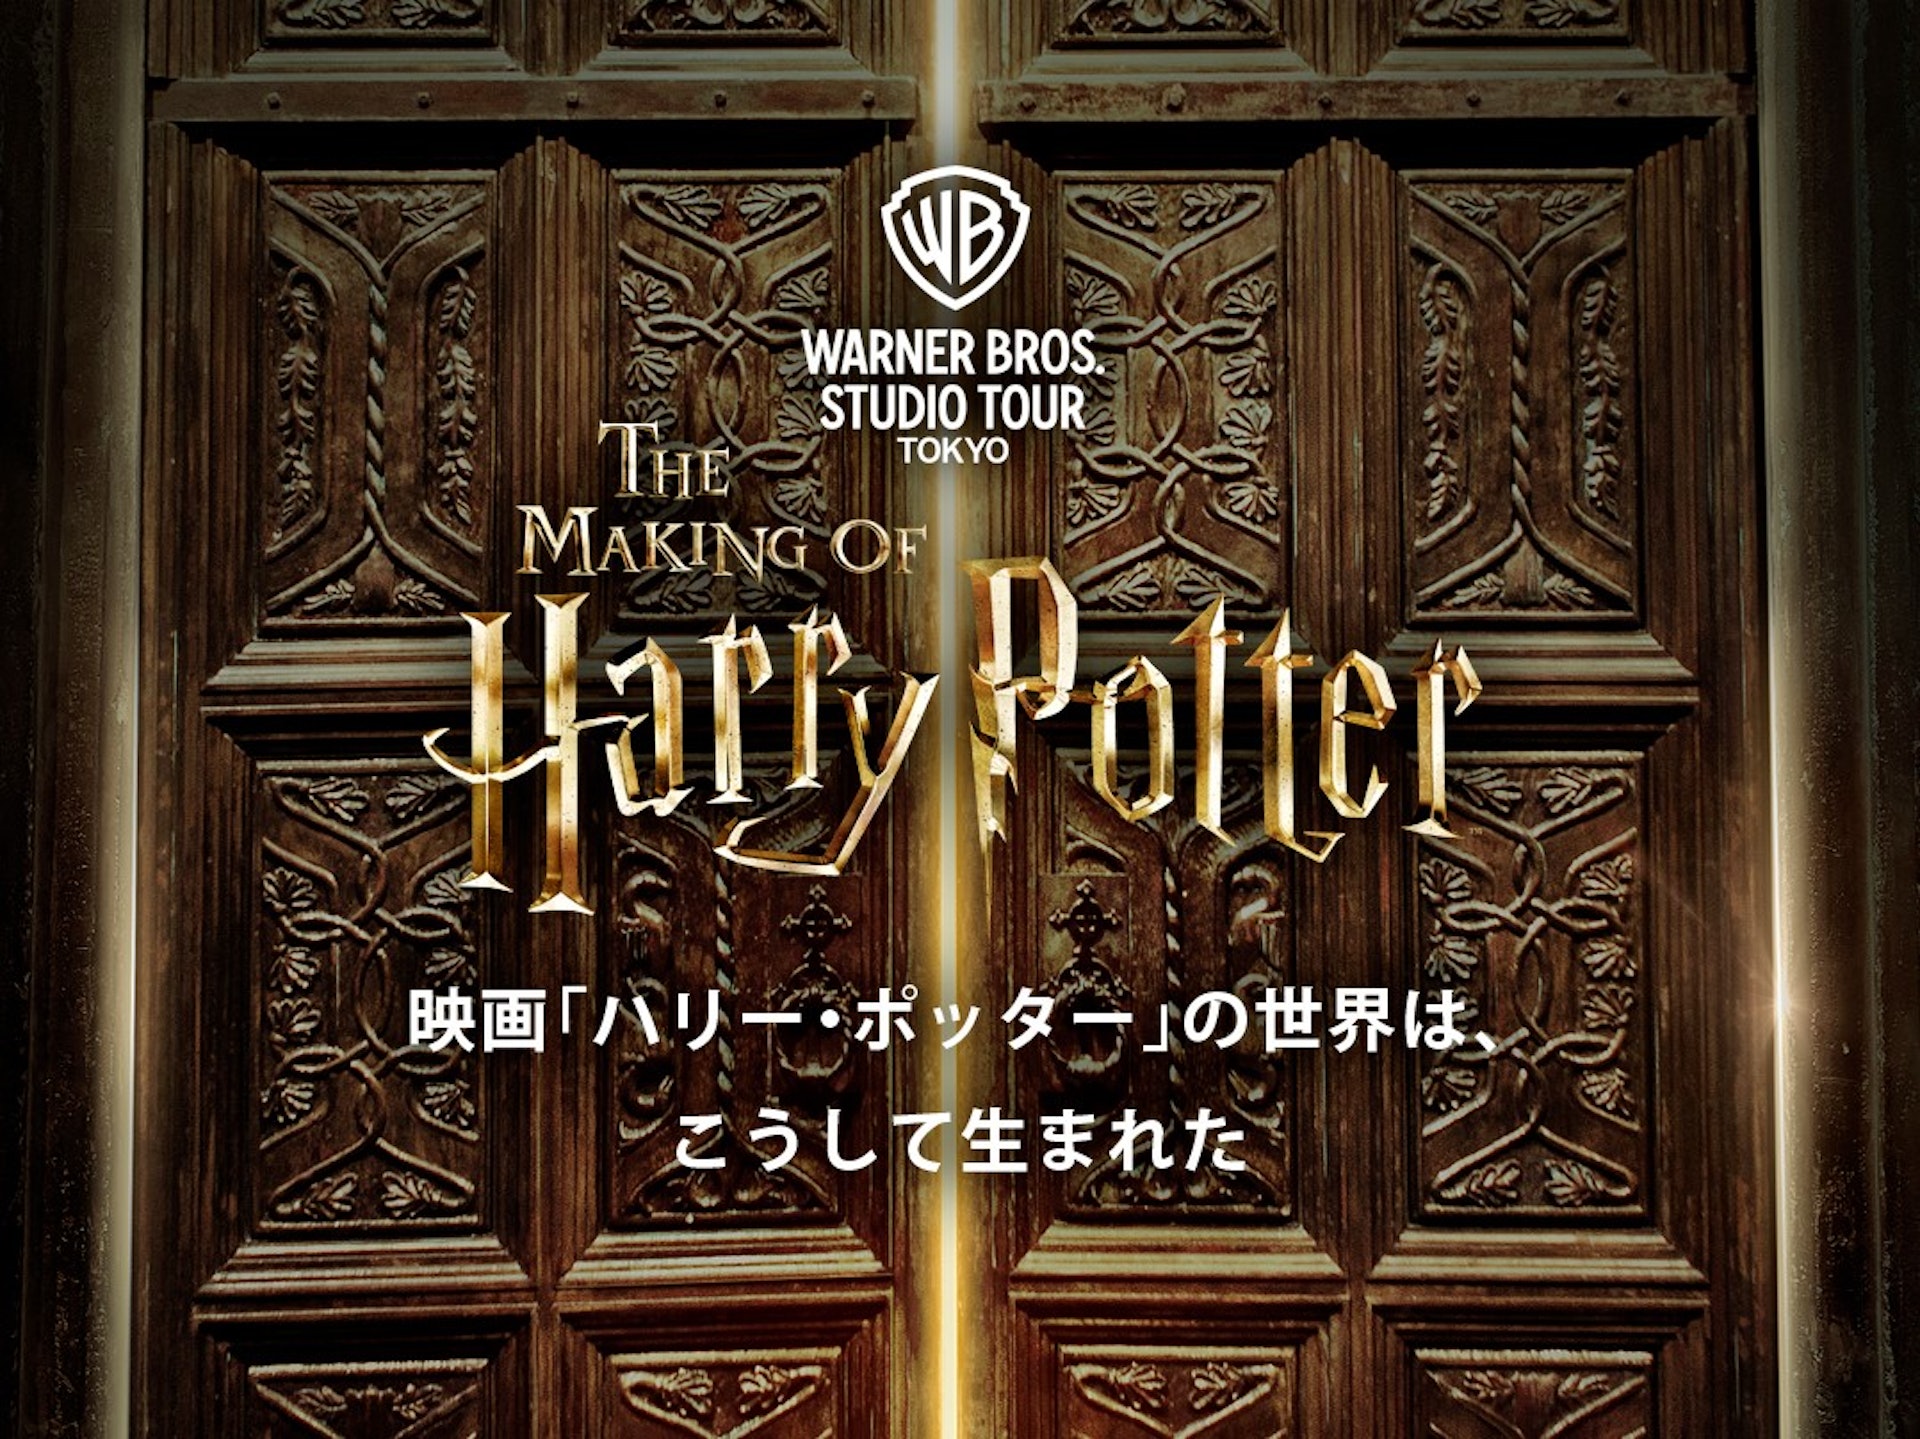 「華納兄弟工作室之旅 – 哈利波特的製片展場」(Warner Bros. Studio Tour Tokyo – The Making of Harry Potter)其實是來自英國倫敦的同名設施。（日本哈利波特影城官網）